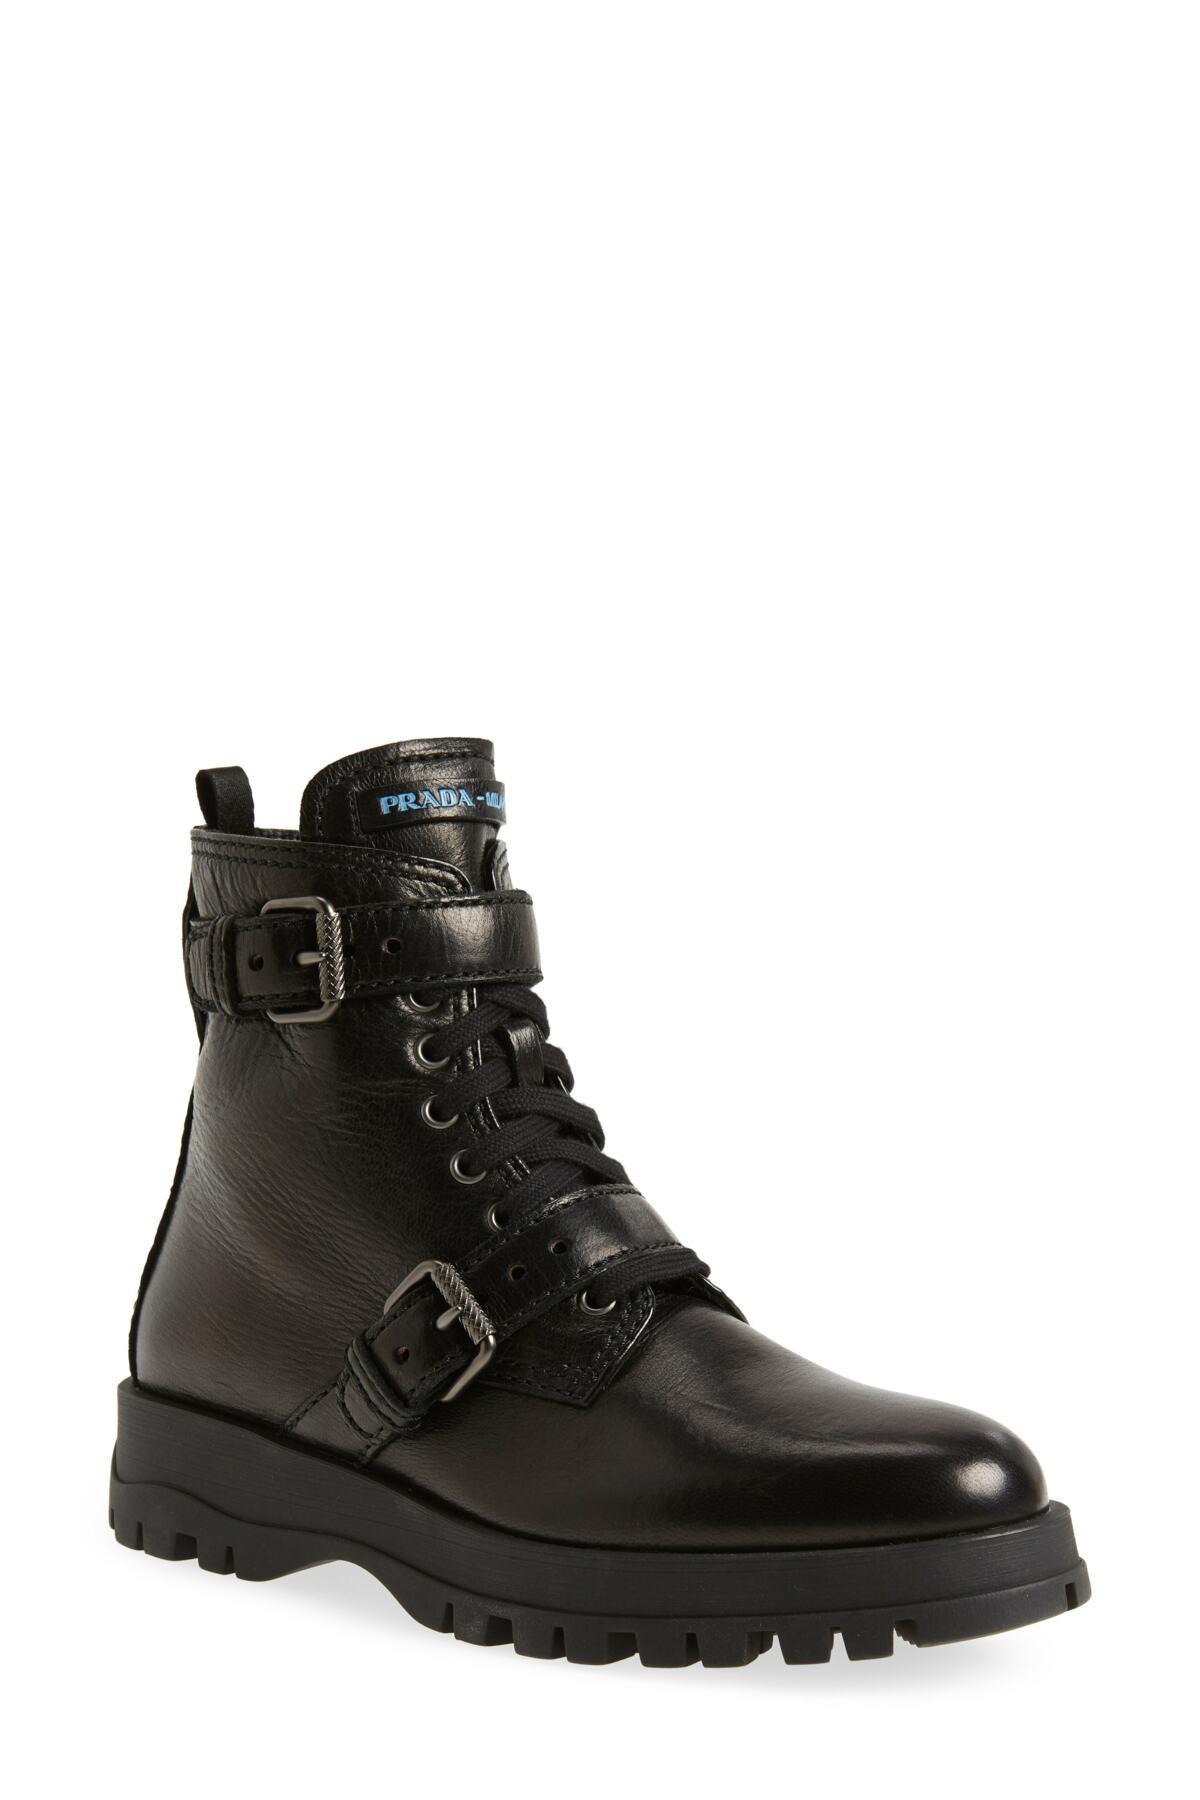 Prada Buckle Combat Boots (women) in Black | Lyst